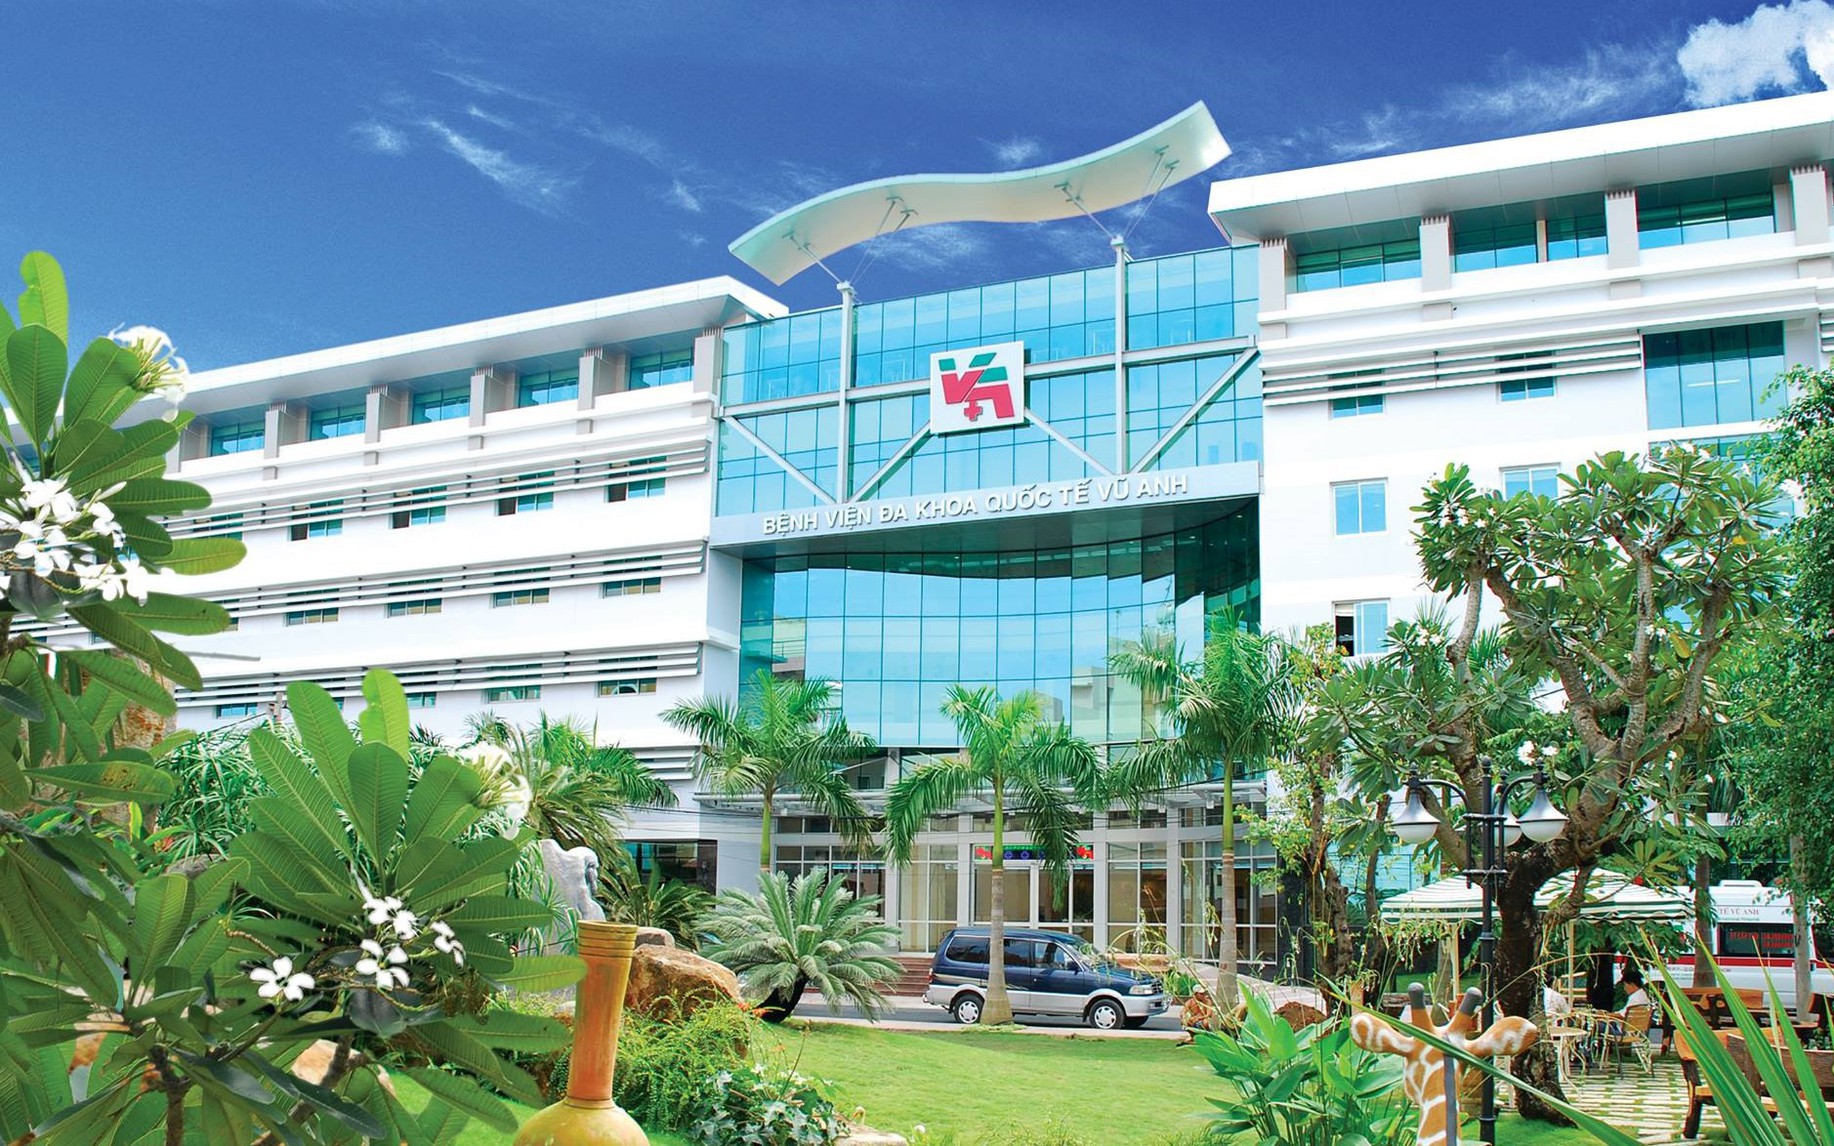 Bệnh viện do Hoa hậu Quý bà Trương Thị Tuyết Nga sáng lập, trước nguy cơ bị xóa sổ